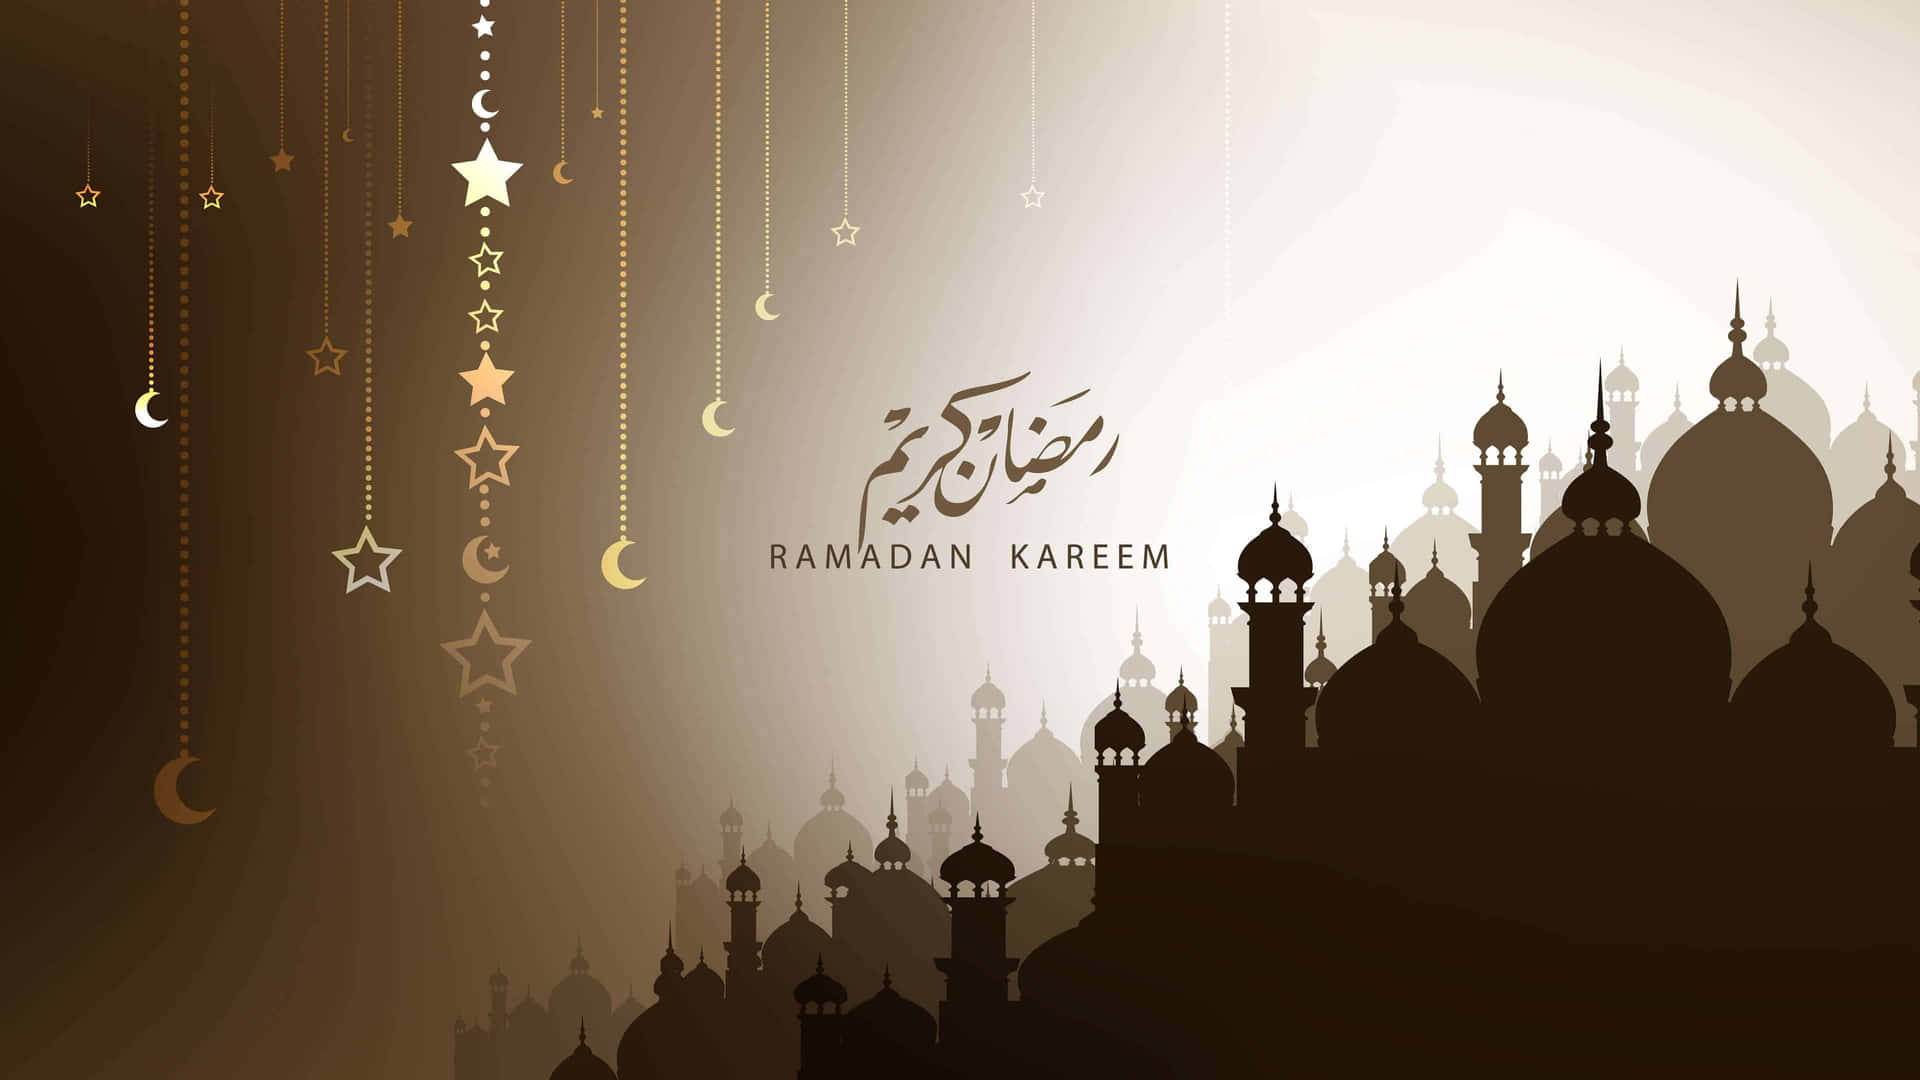 Minimlistiskbild Med Måne, Stjärna Och Ramadan.